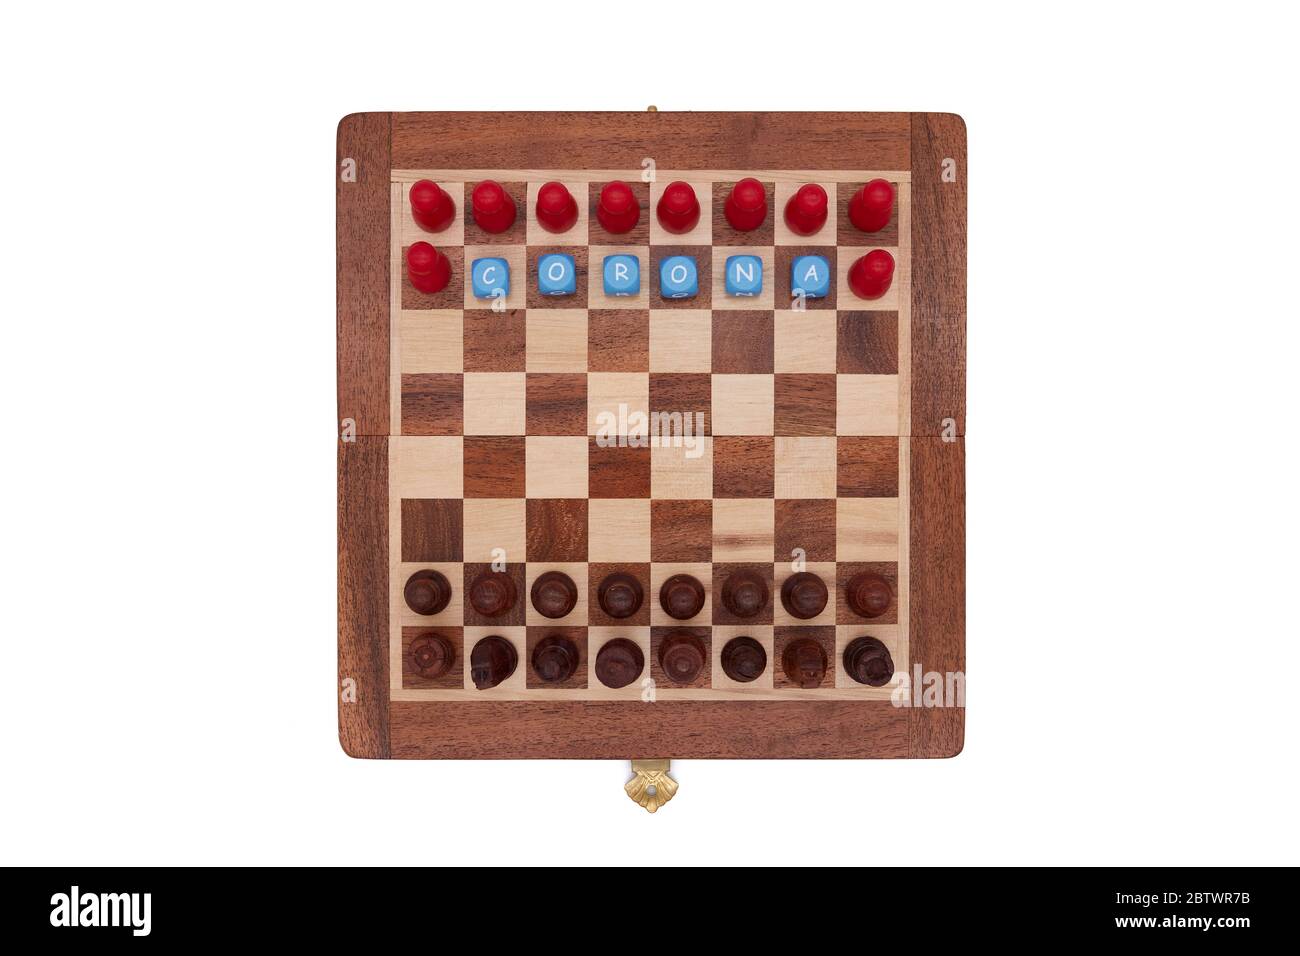 Les pièces d'échecs classiques noires rivalisent avec les joueurs de corona rouge Banque D'Images